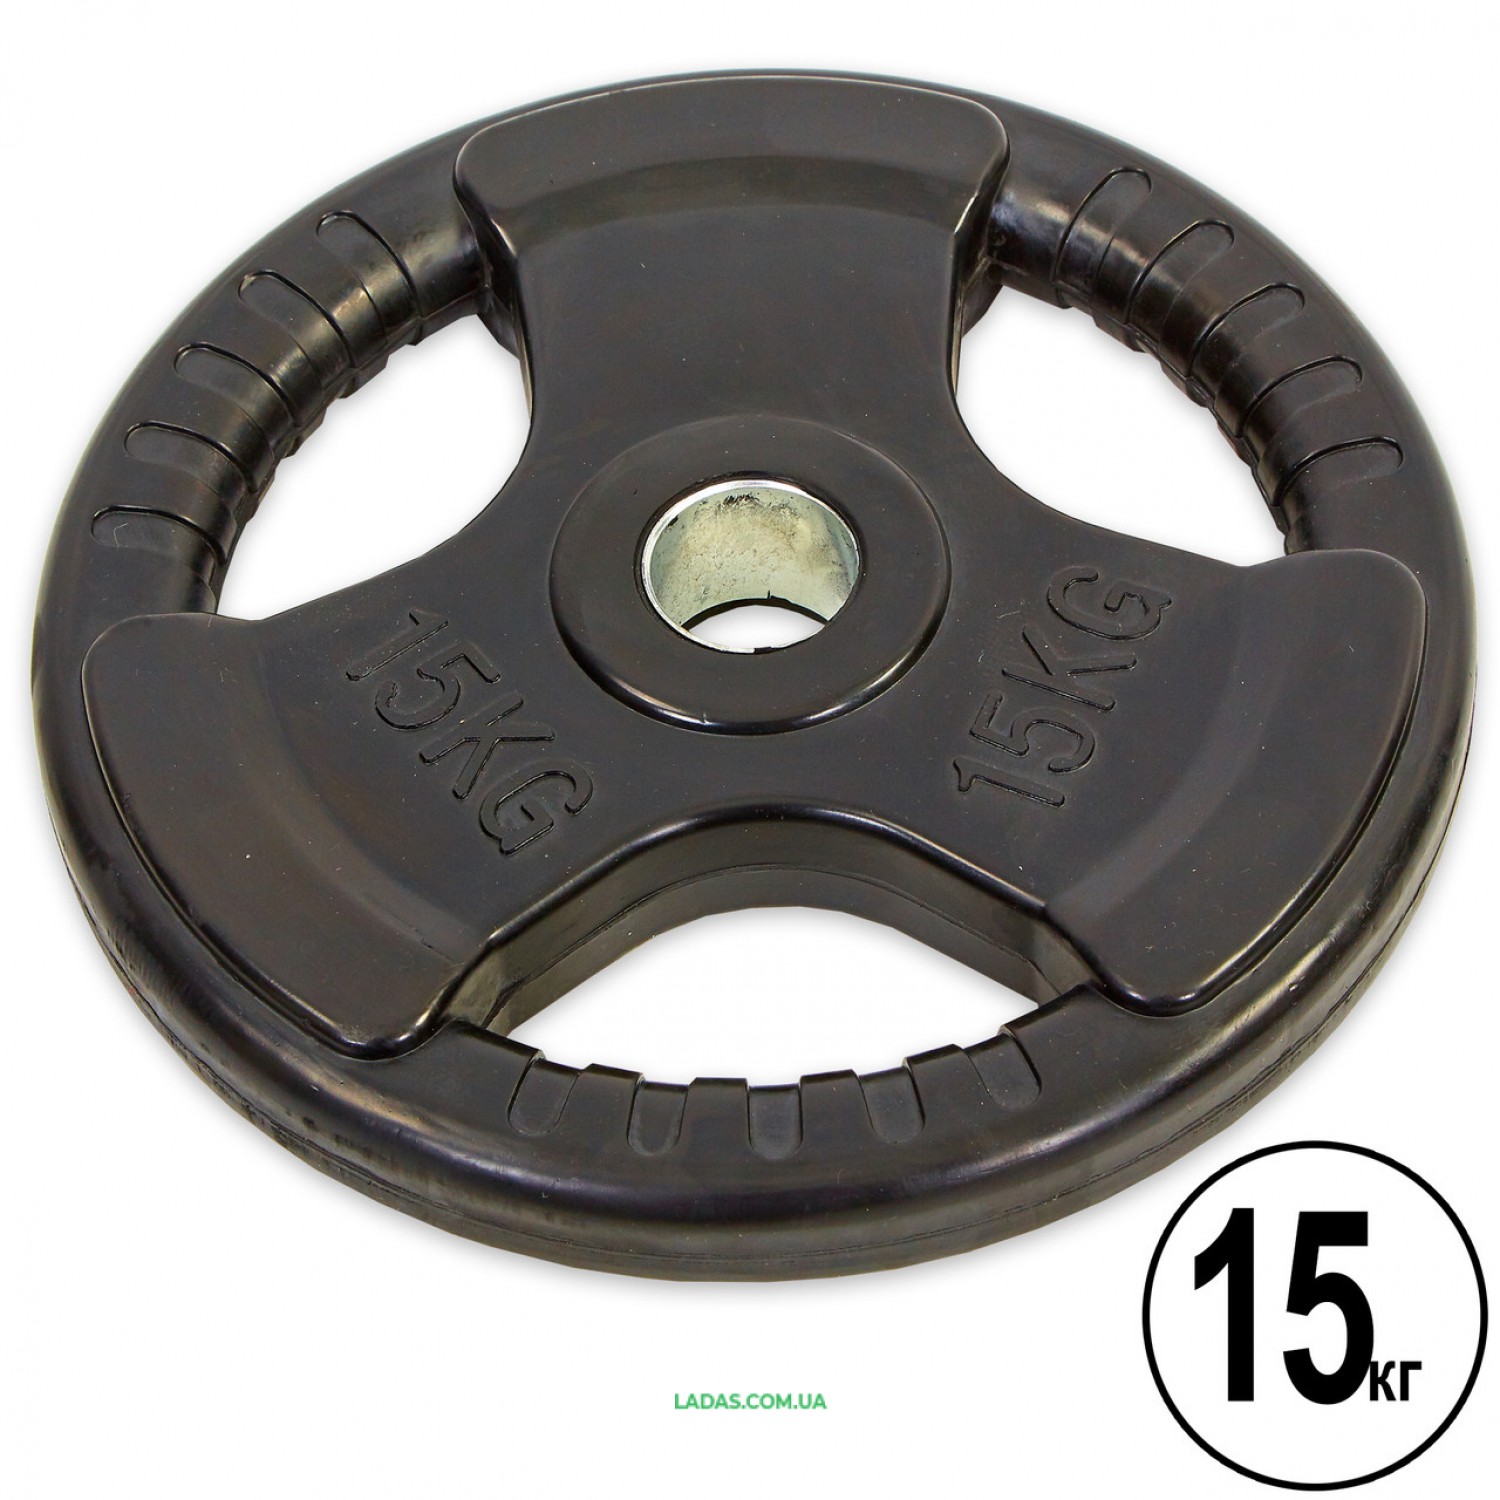 Блины (диски) обрезиненные с тройным хватом и металлической втулкой d-52мм(1шт*15кг)